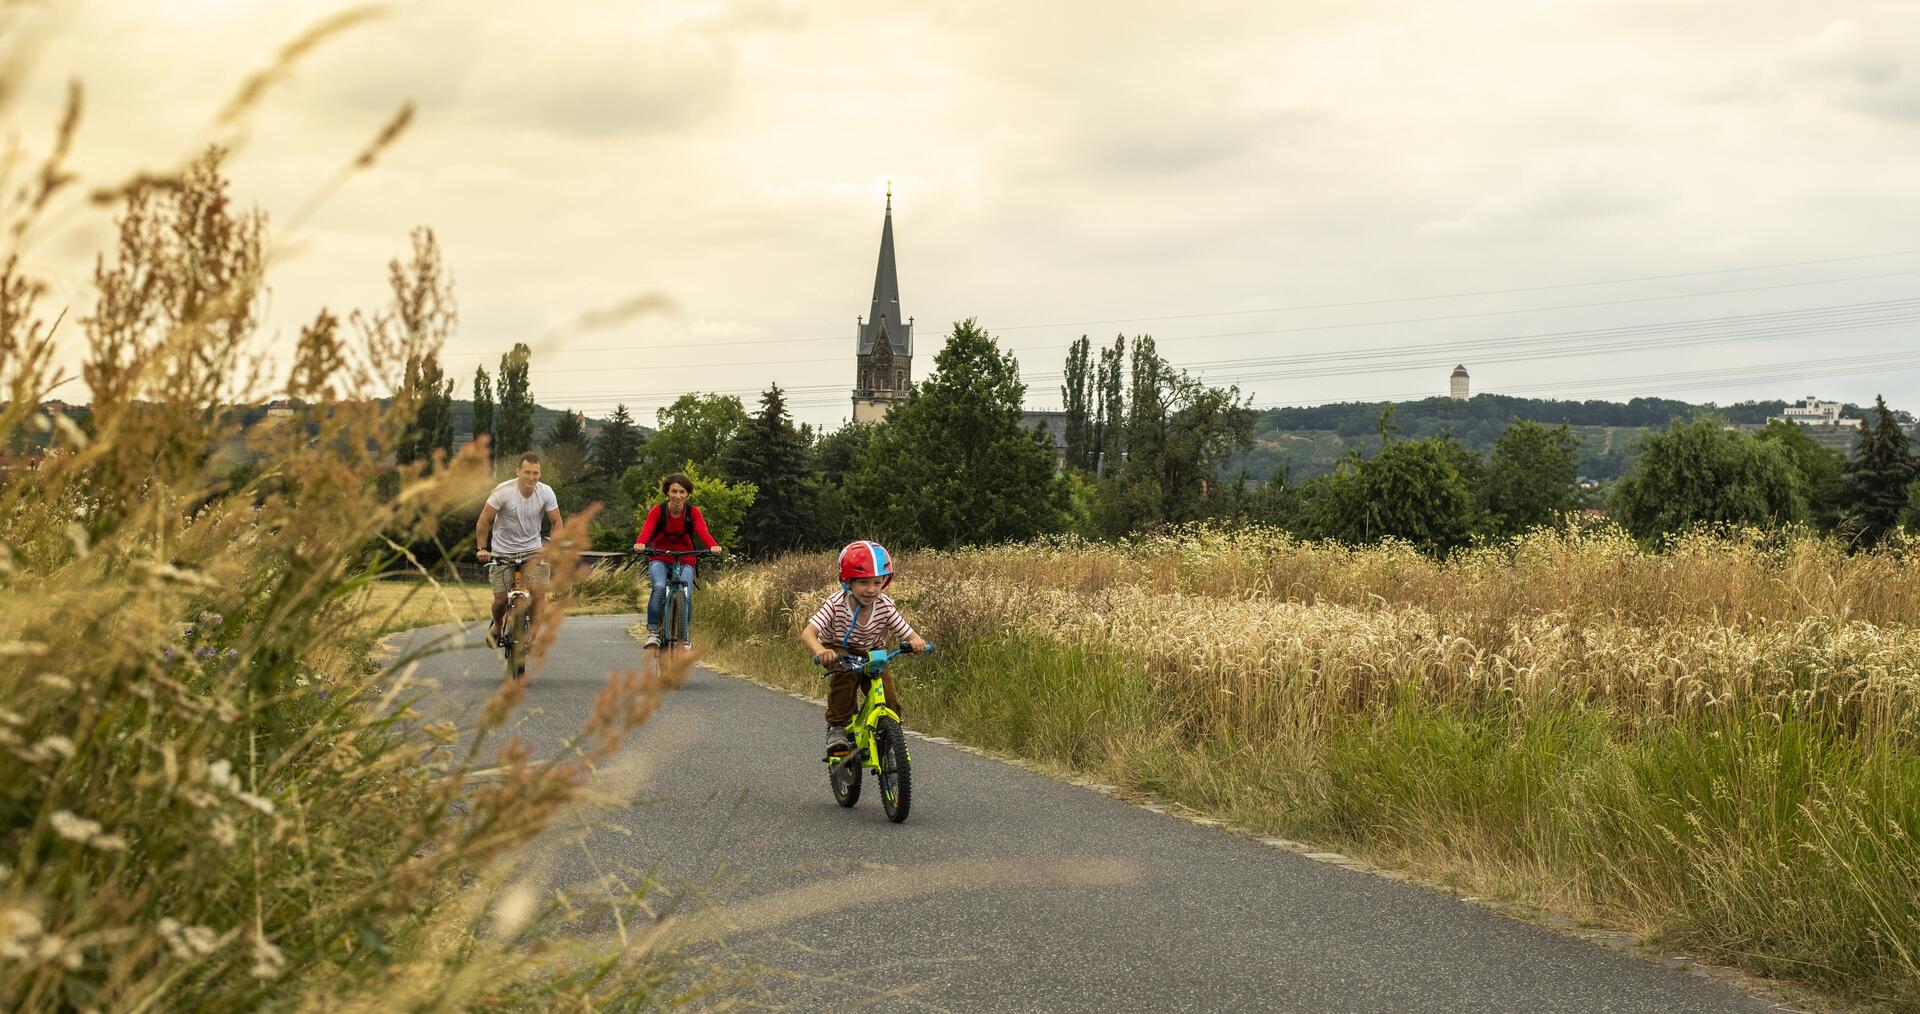 Bild vergrößern: Eine Familie fährt auf einem Radweg Fahrrad. Im Hintergrund eine Kirchturmspitze.